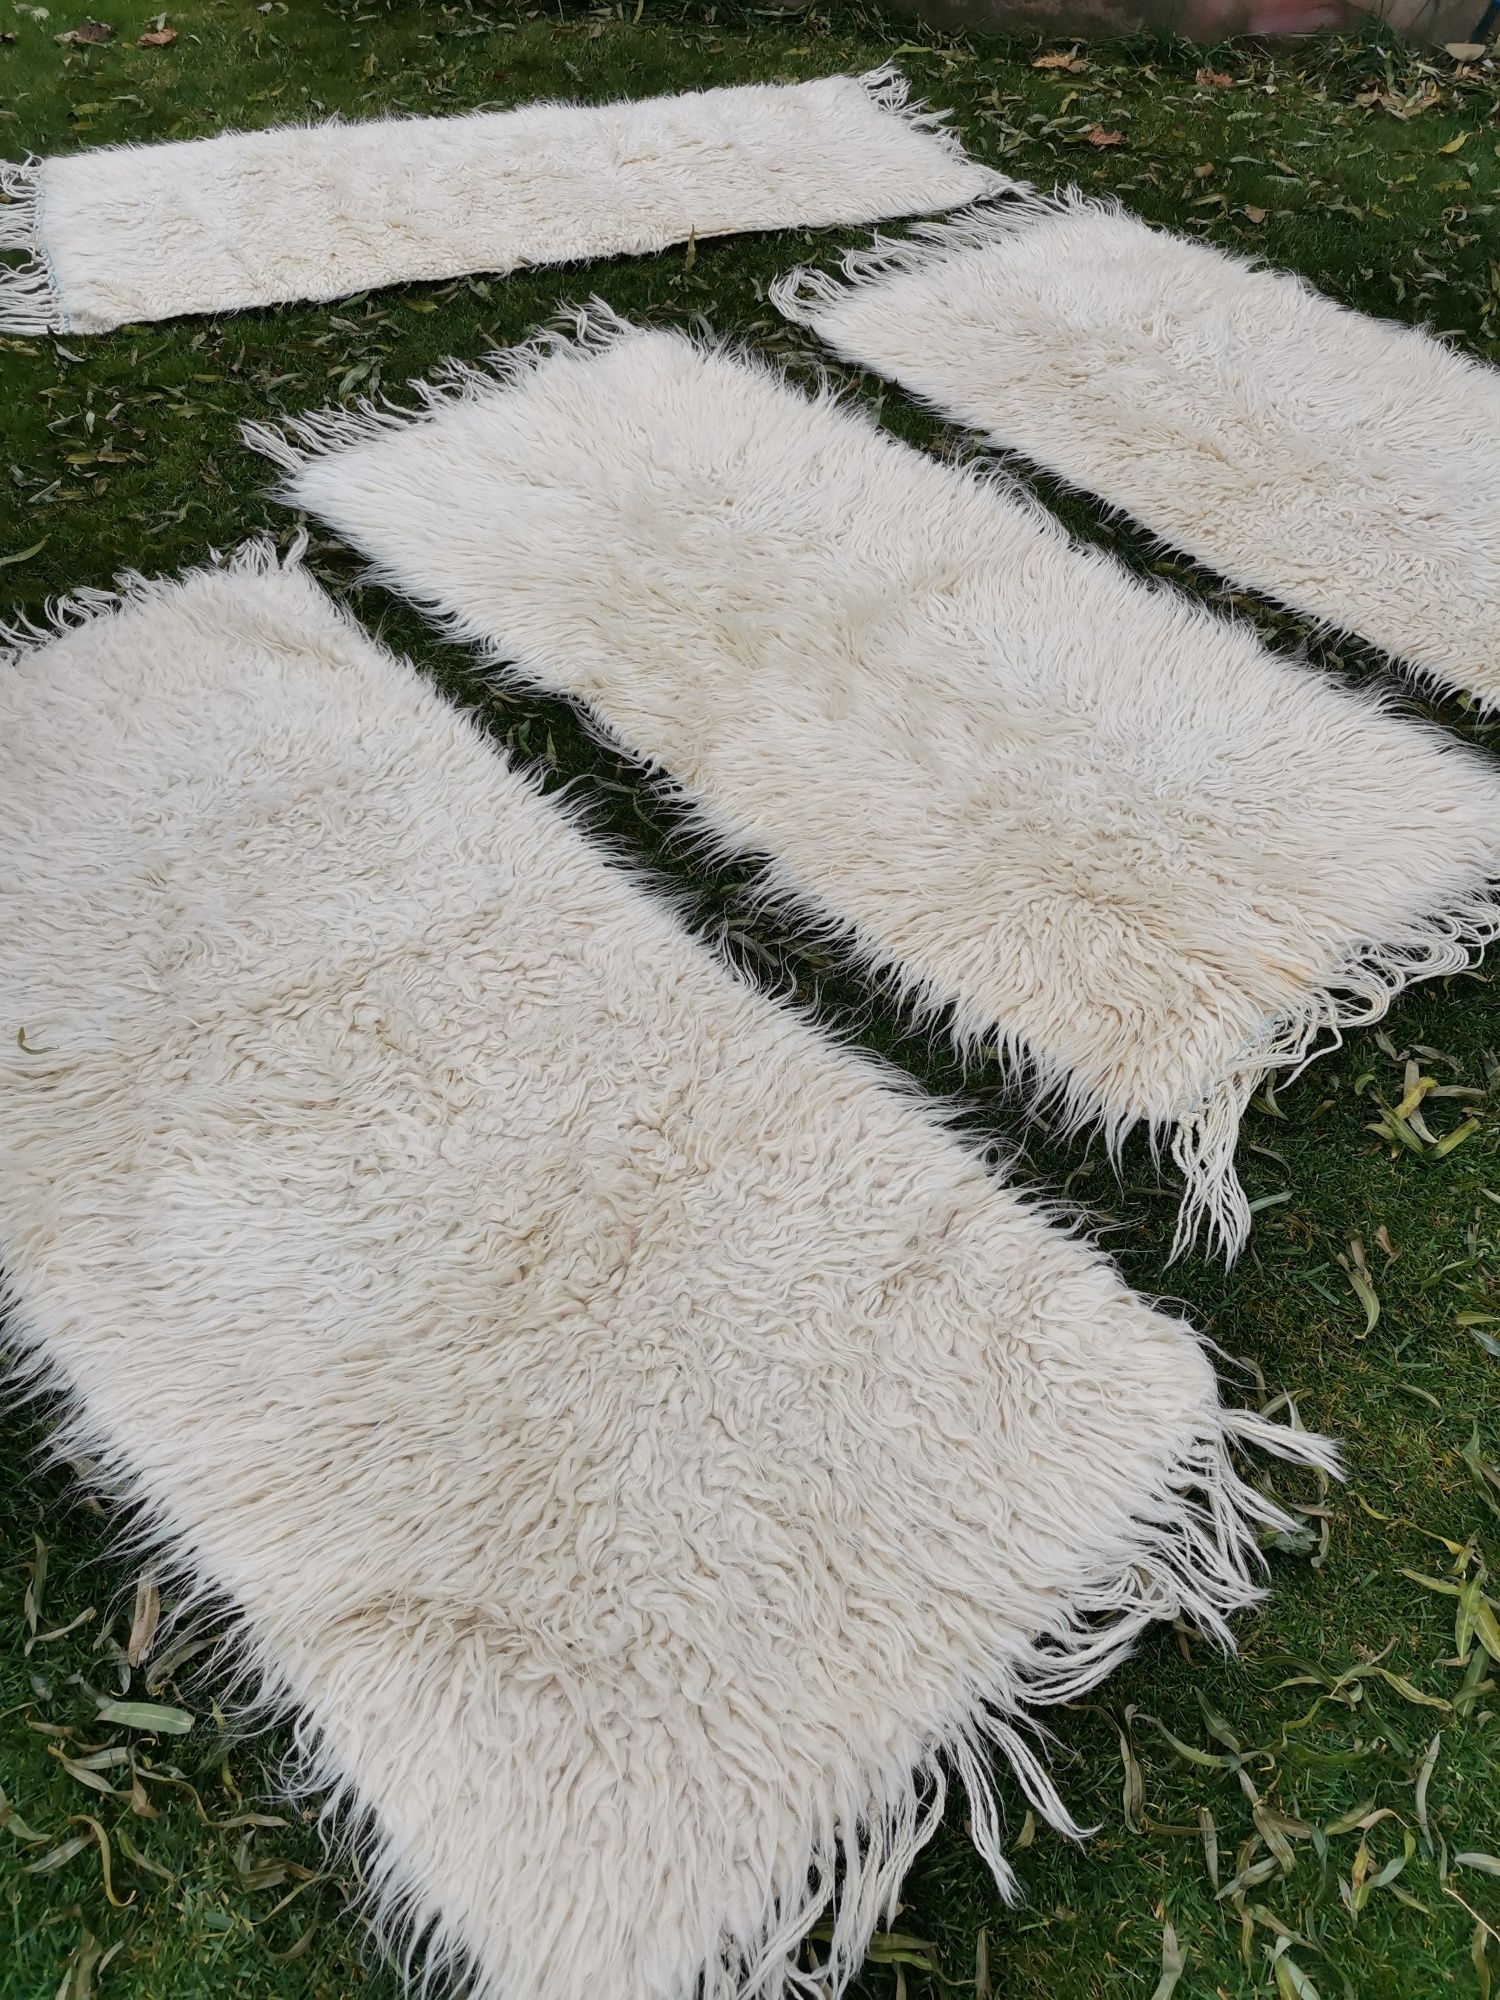 Covoare lana naturala oaie